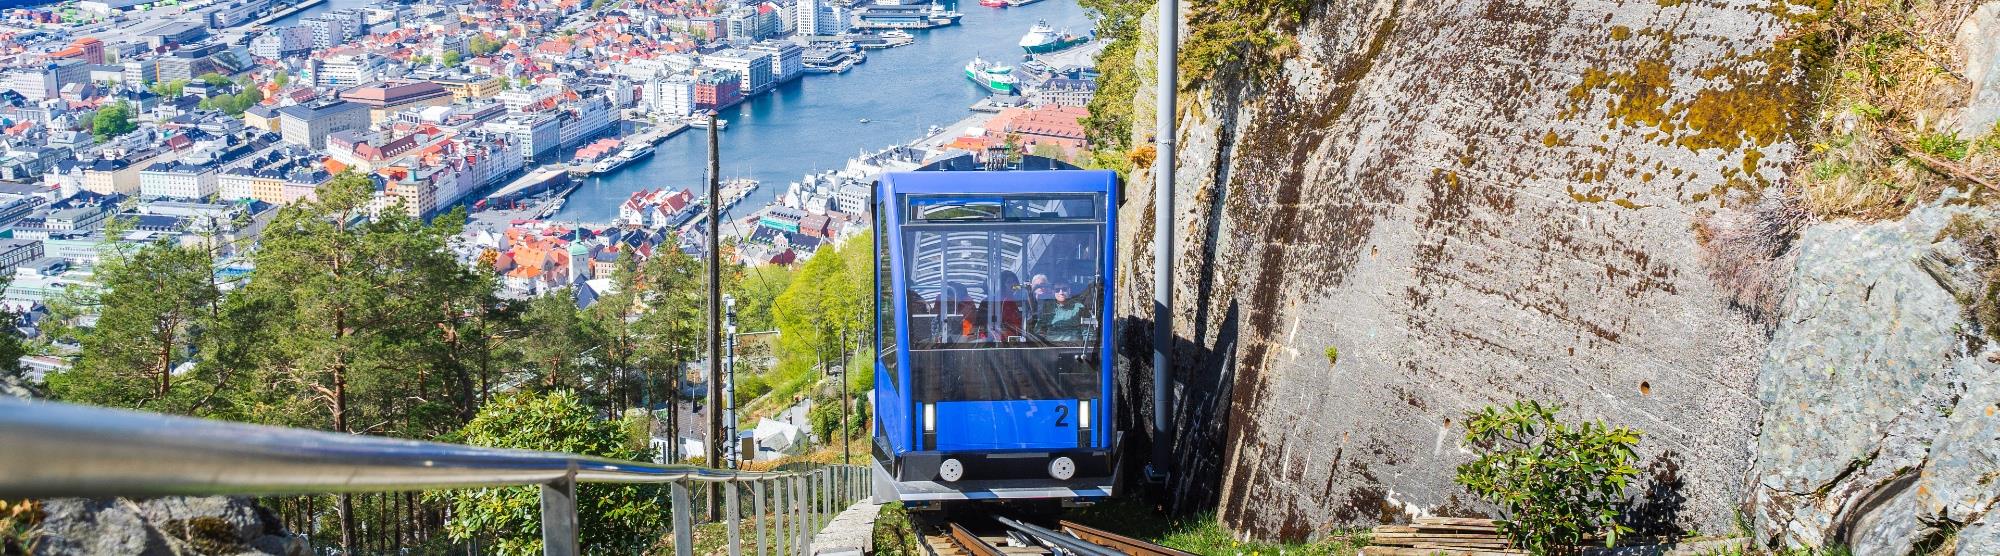 Sehenswürdigkeiten in Bergen